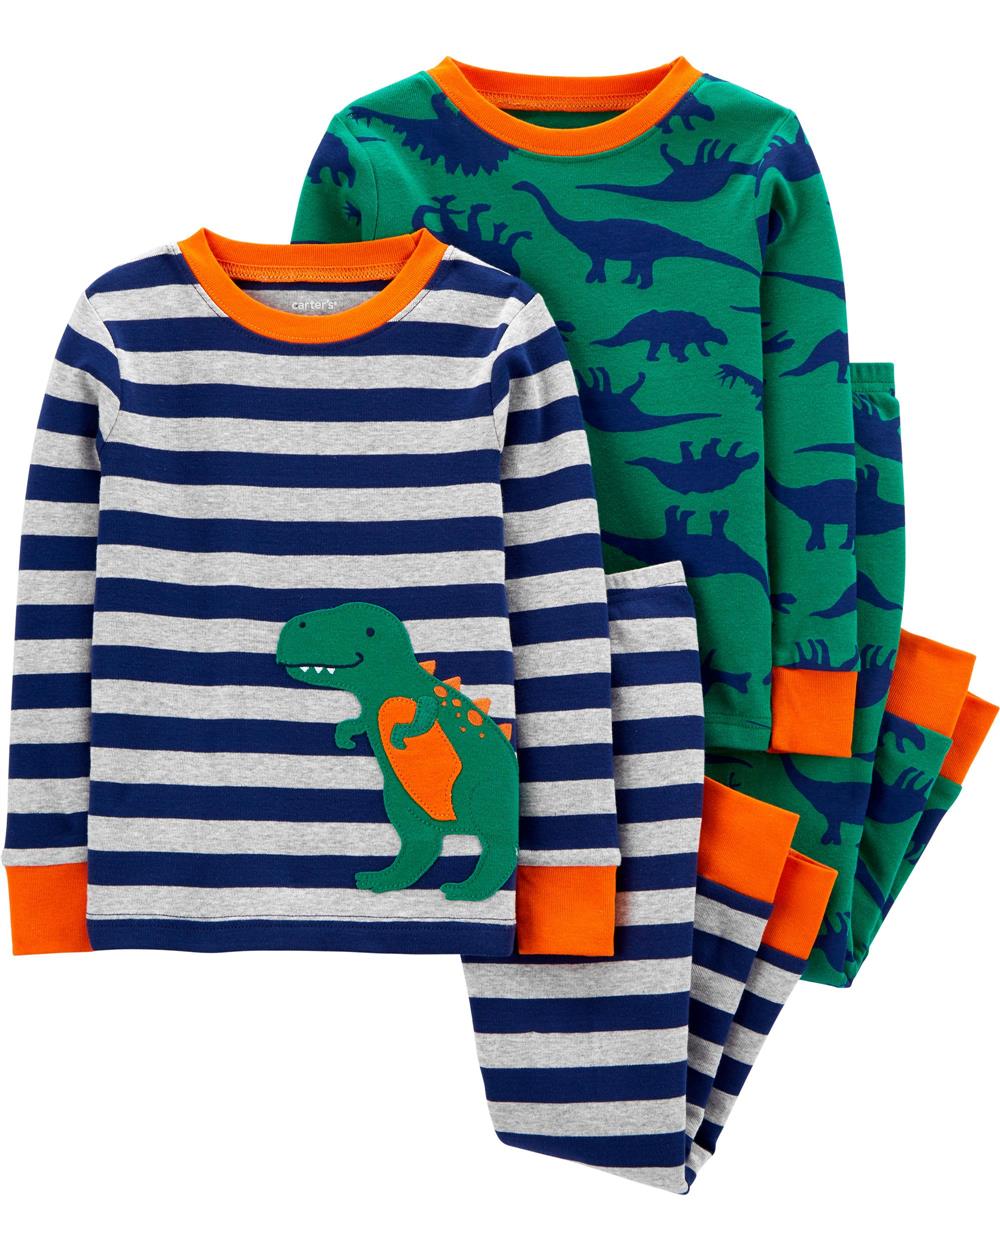 Carters Boys 12-24 Months Dinosaur 4-Piece Pajama Set